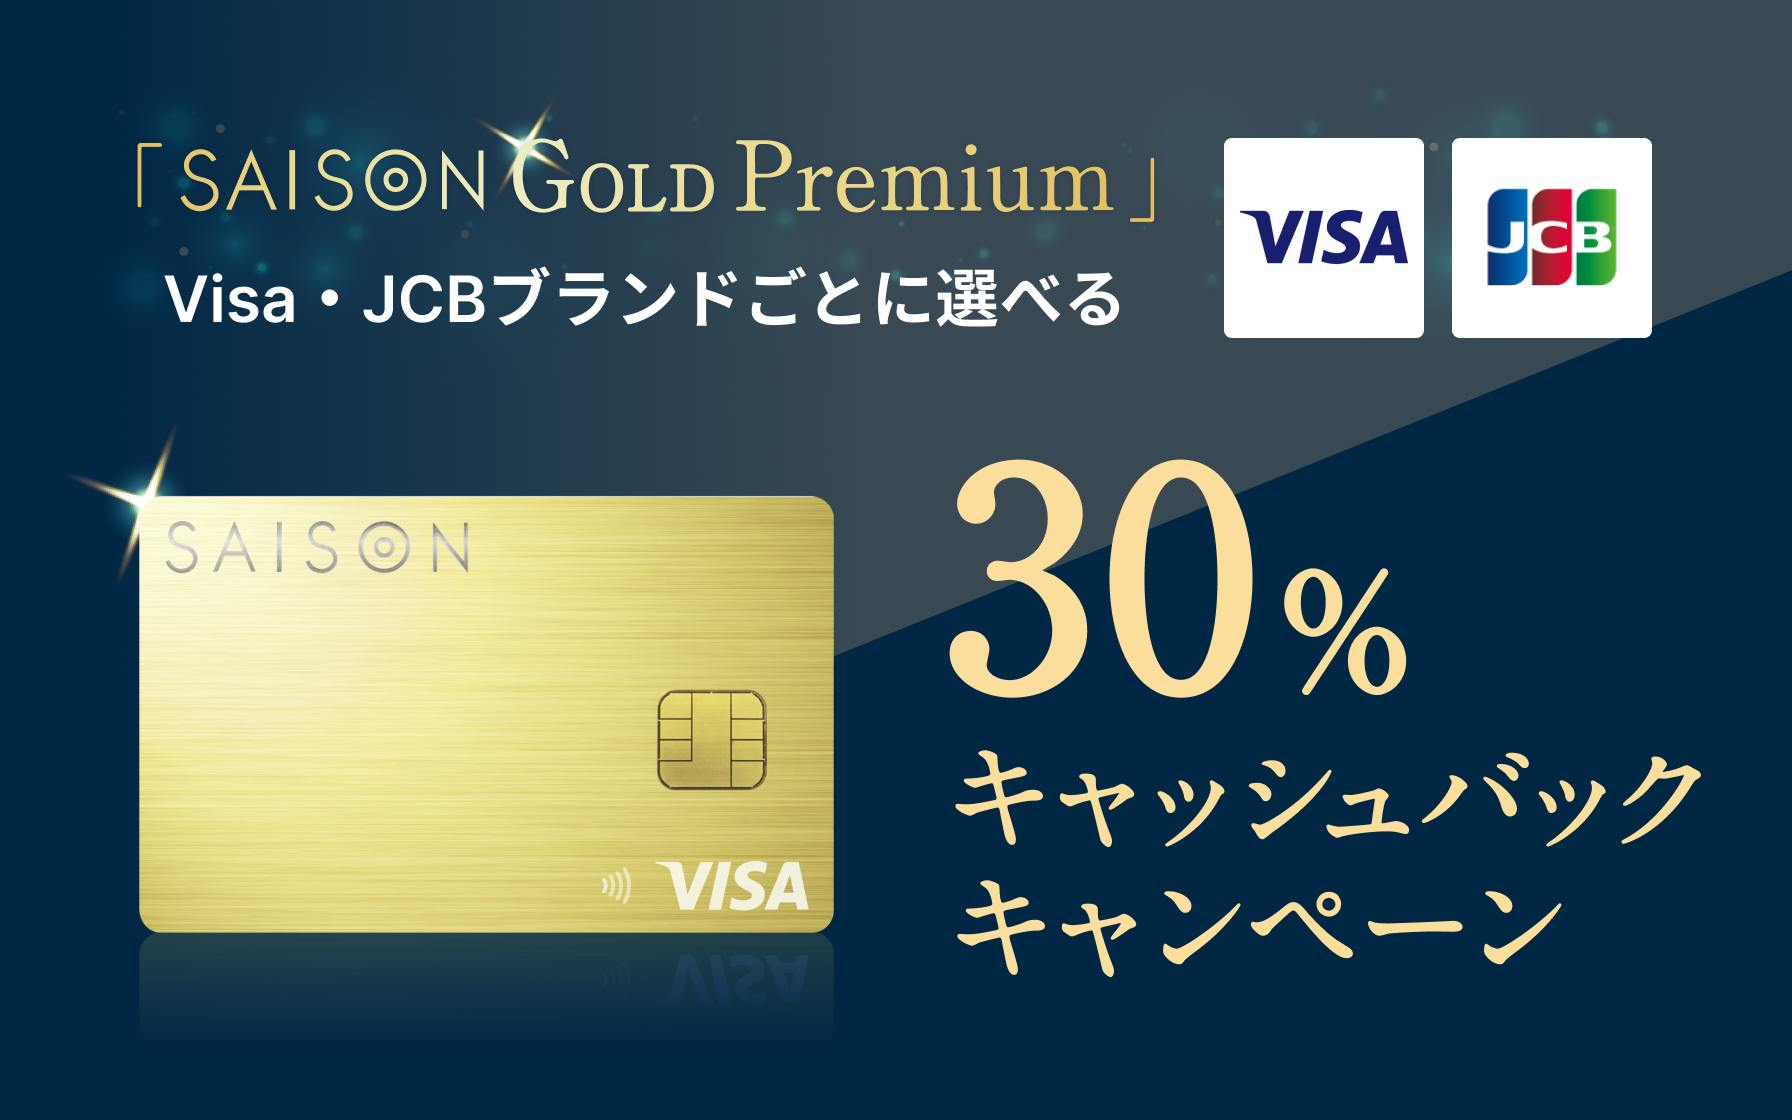 「SAISON GOLD Premium」VISA・JCBブランドごとに選べる30%キャッシュバックキャンペーン